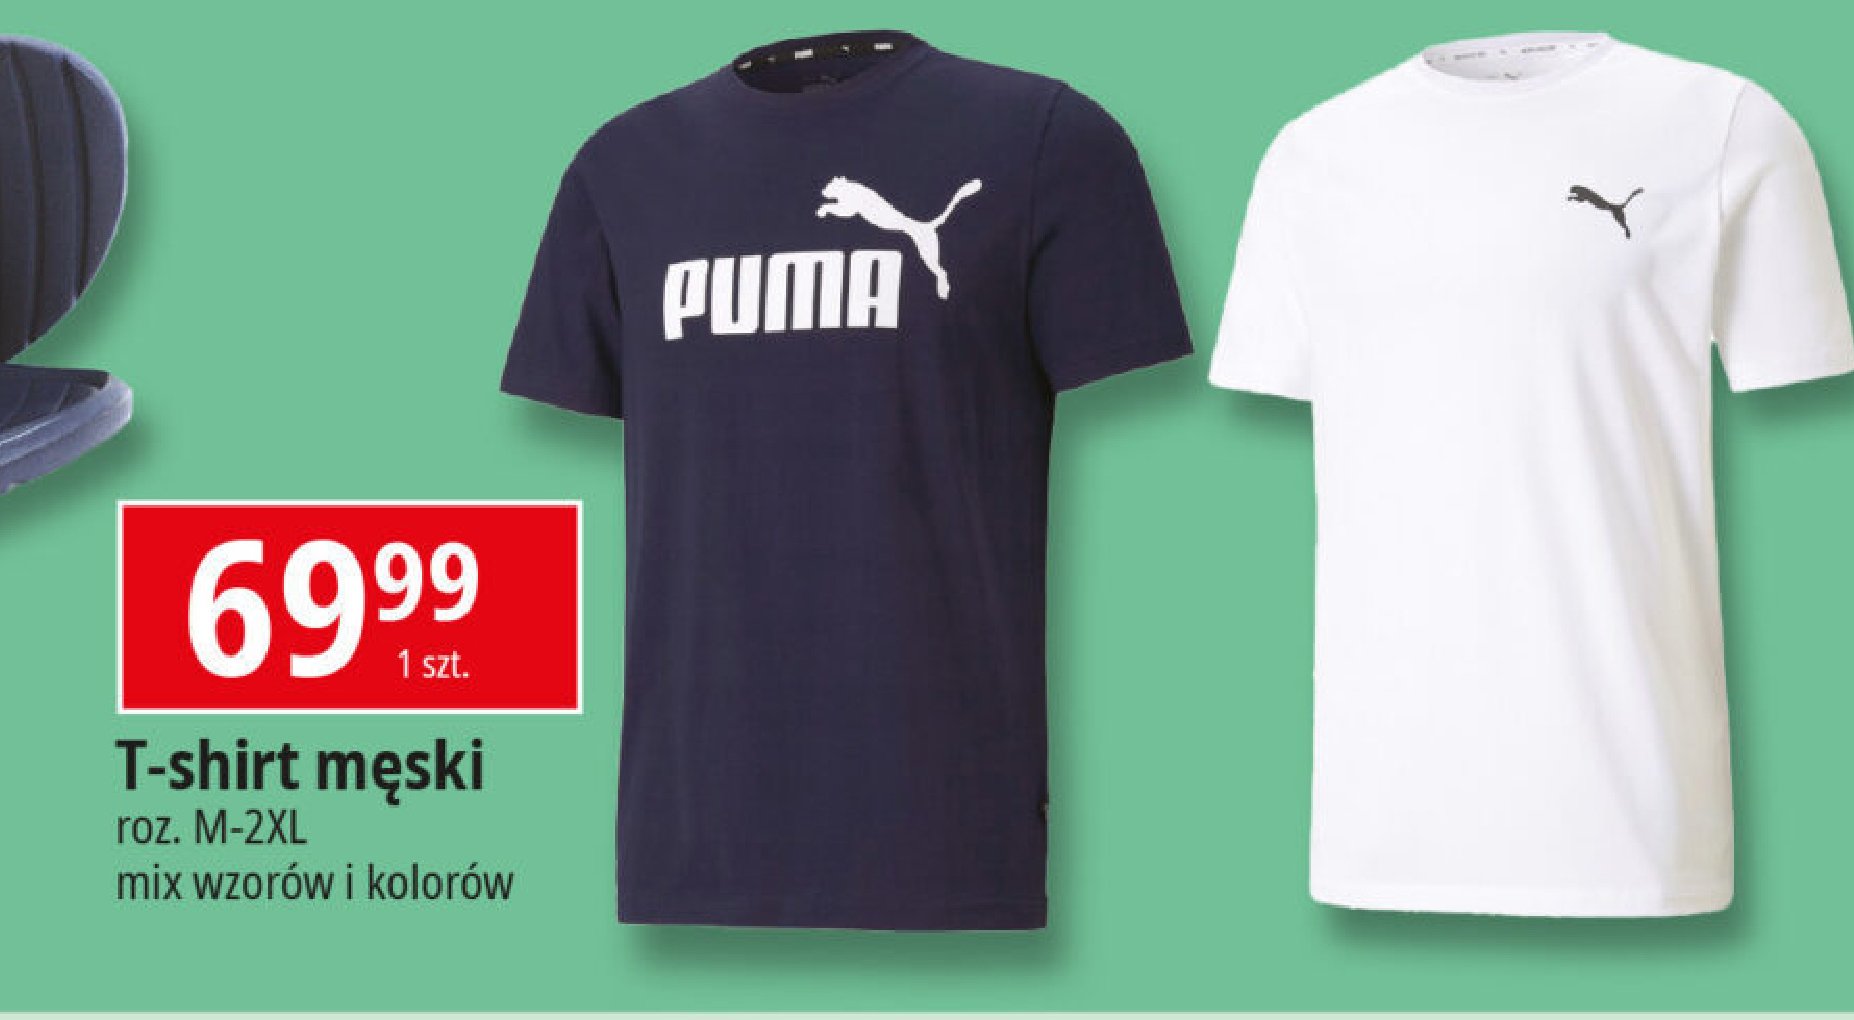 T-shirt męski m-2xl Puma promocja